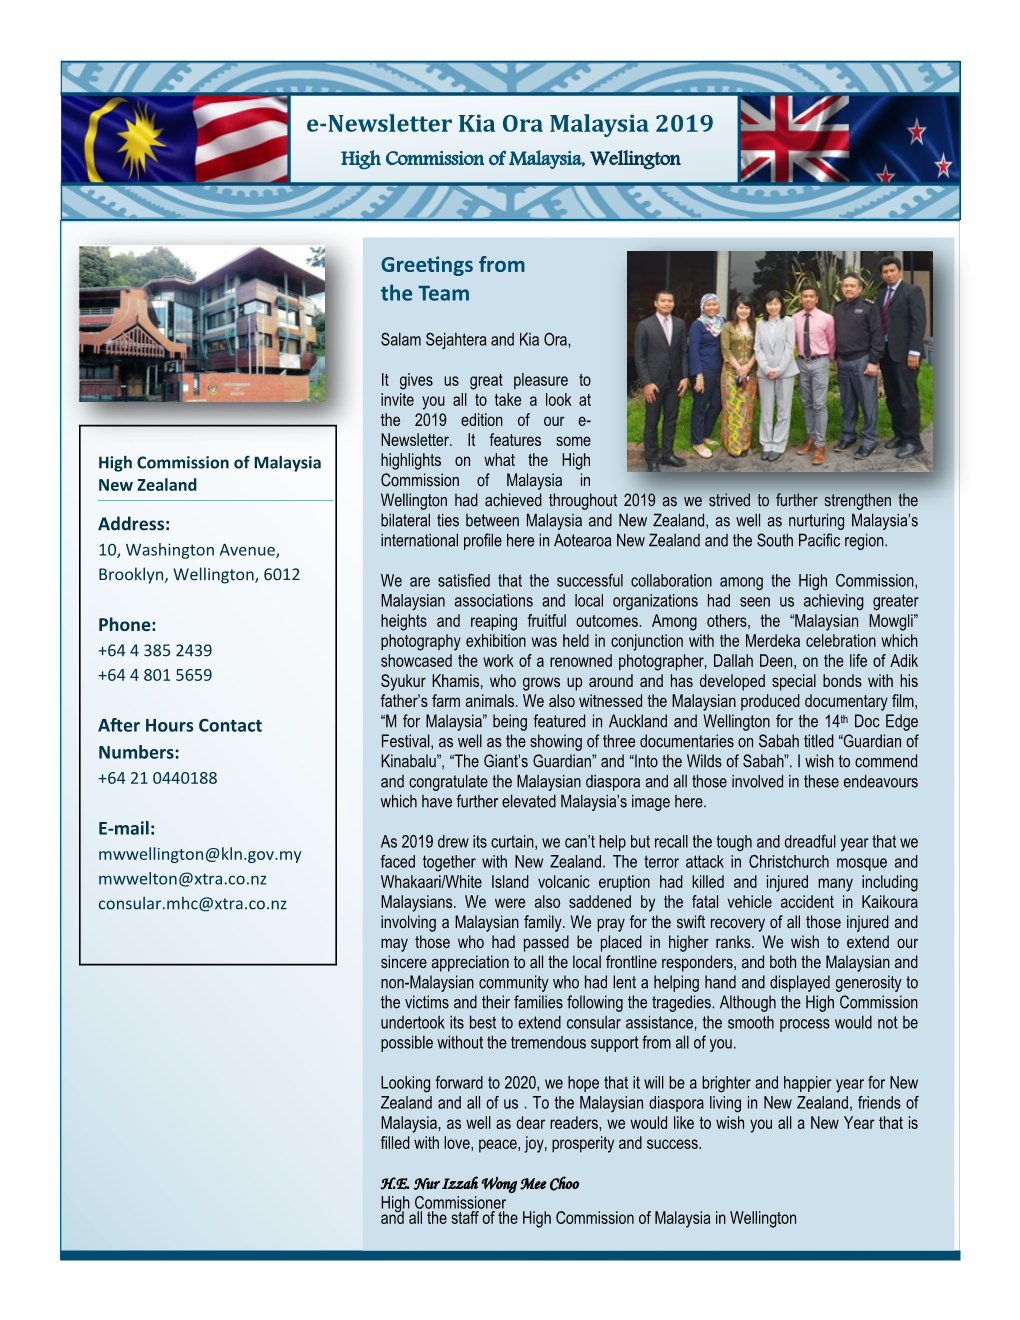 E-Newsletter Kia Ora Malaysia 2019 High Commission of Malaysia, Wellington